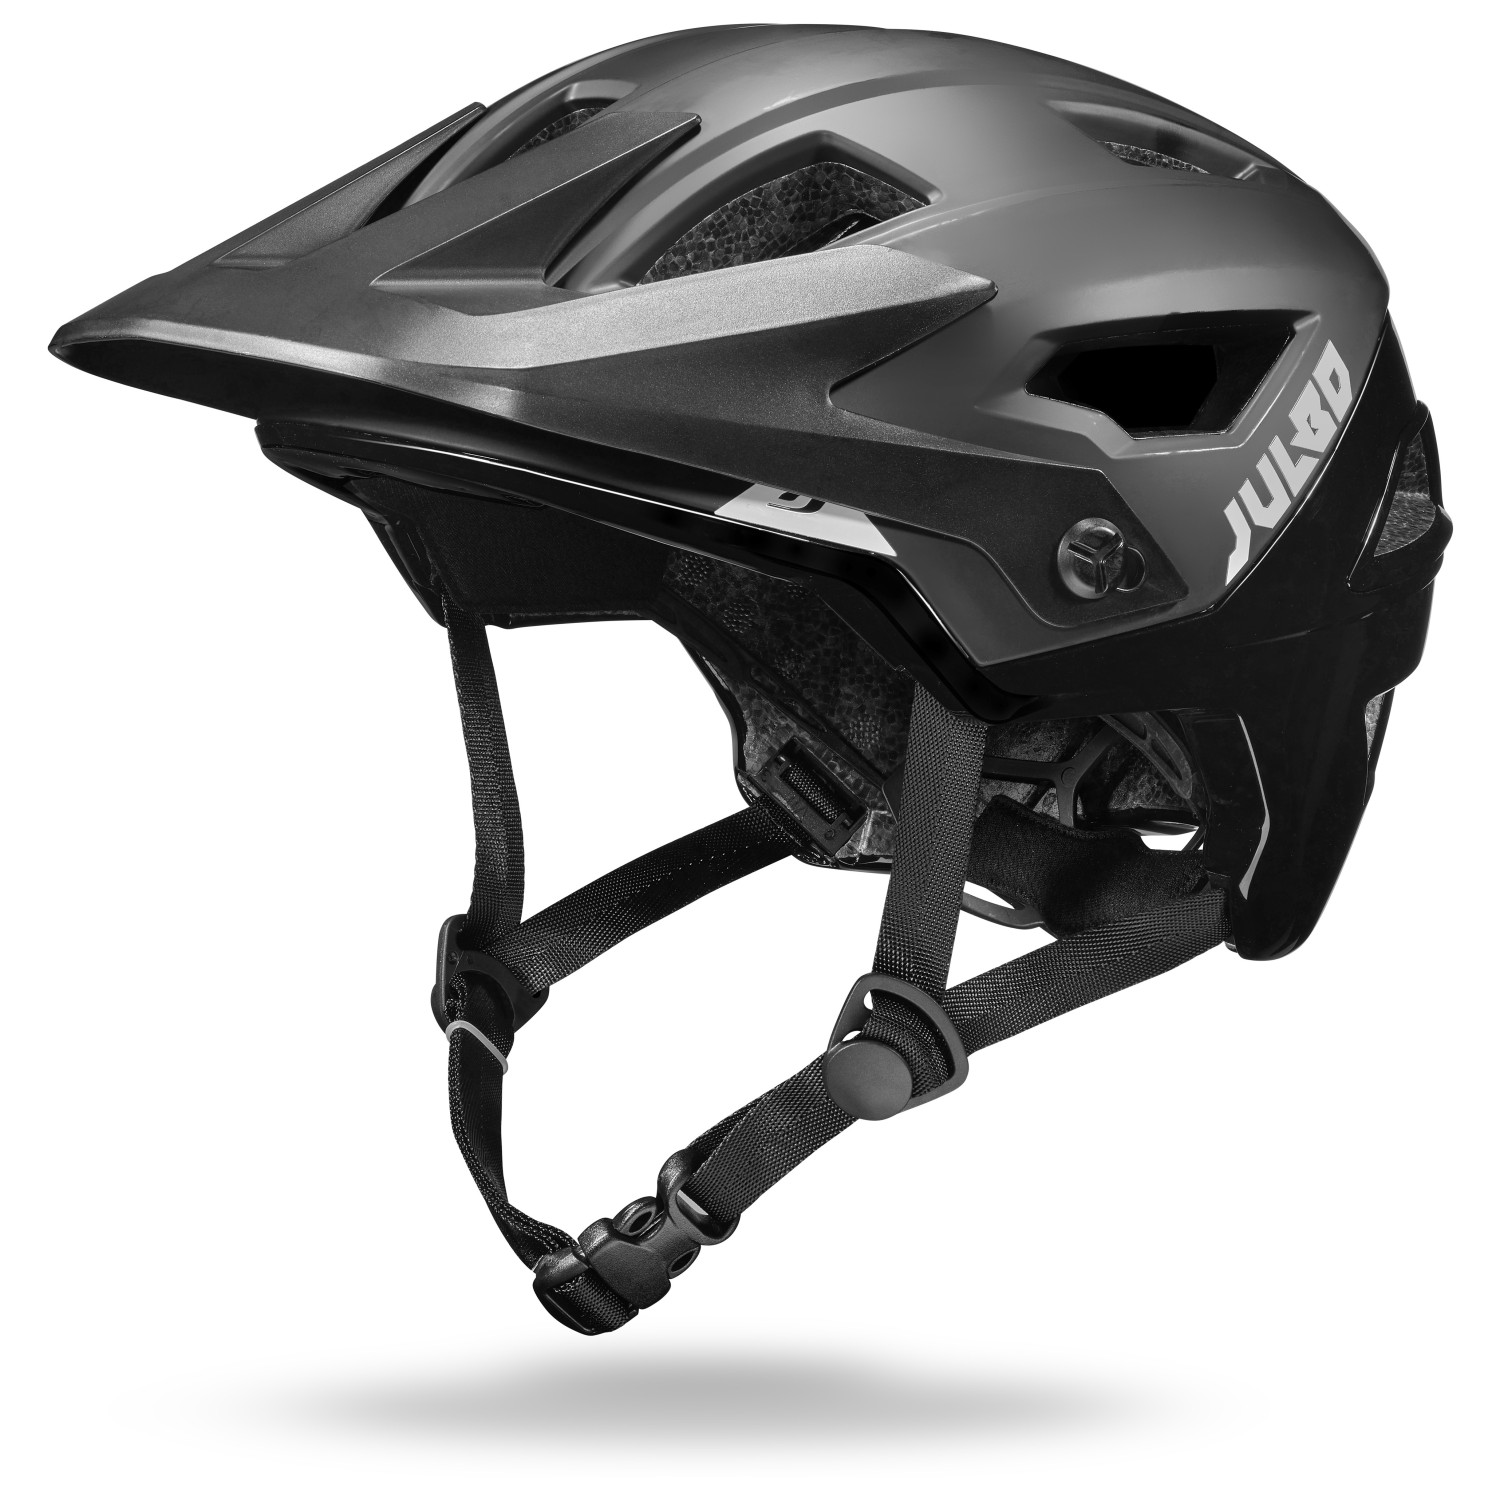 Велосипедный шлем Julbo Rock, черный шлем велосипедный stern зеленый размер 52 56